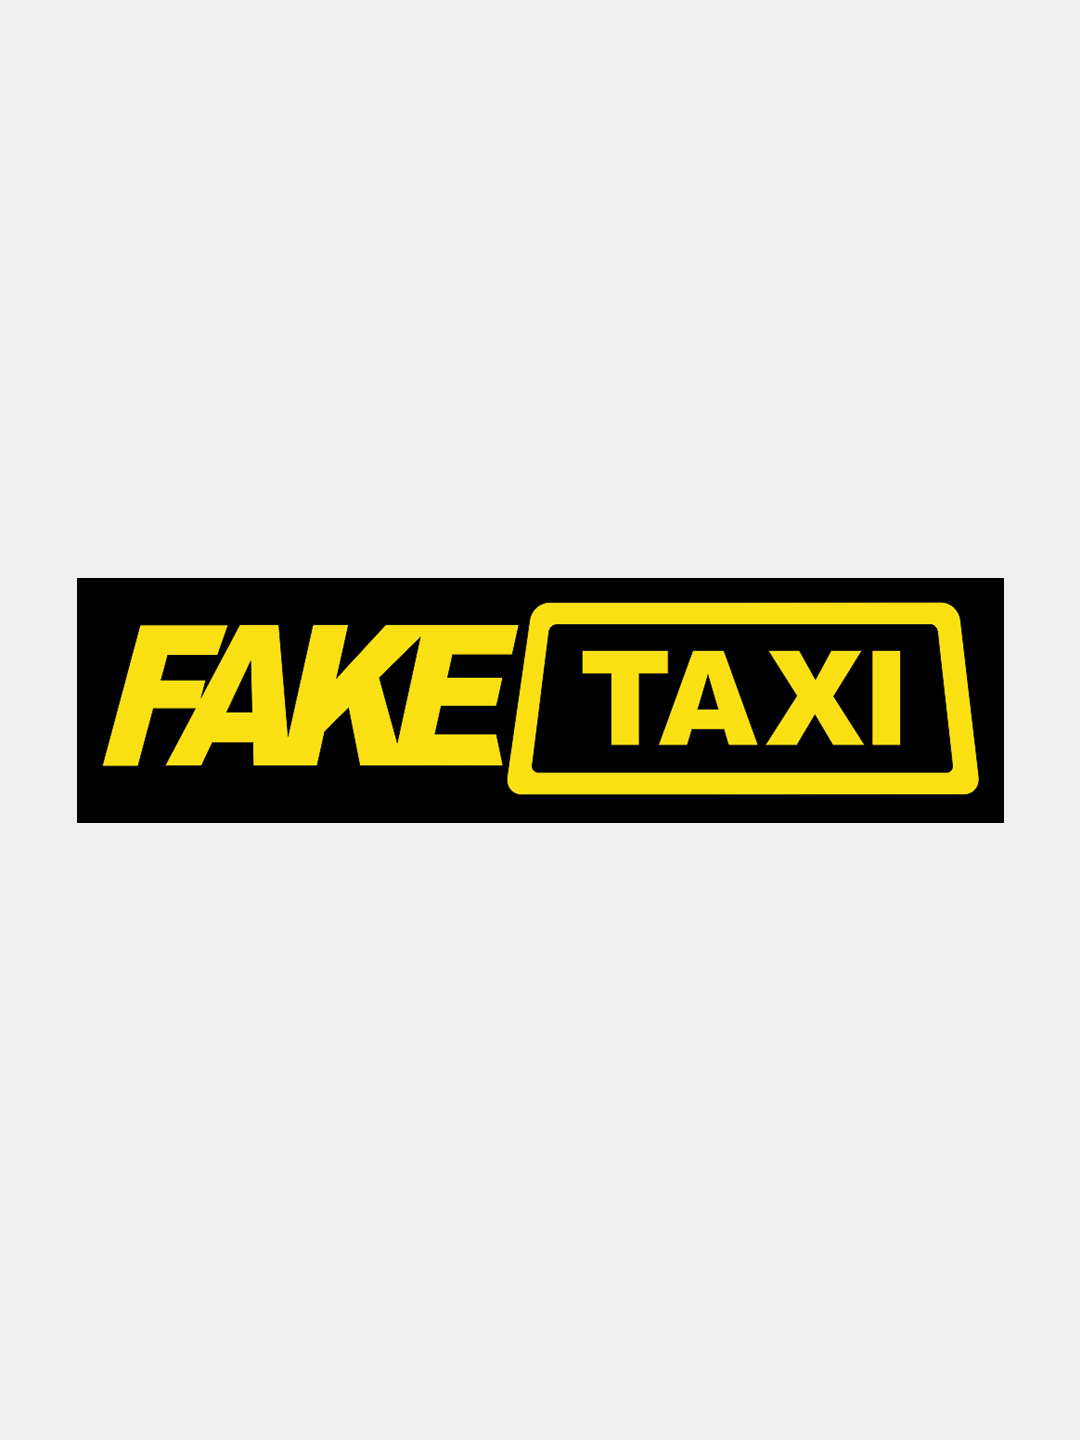 Fale taxi